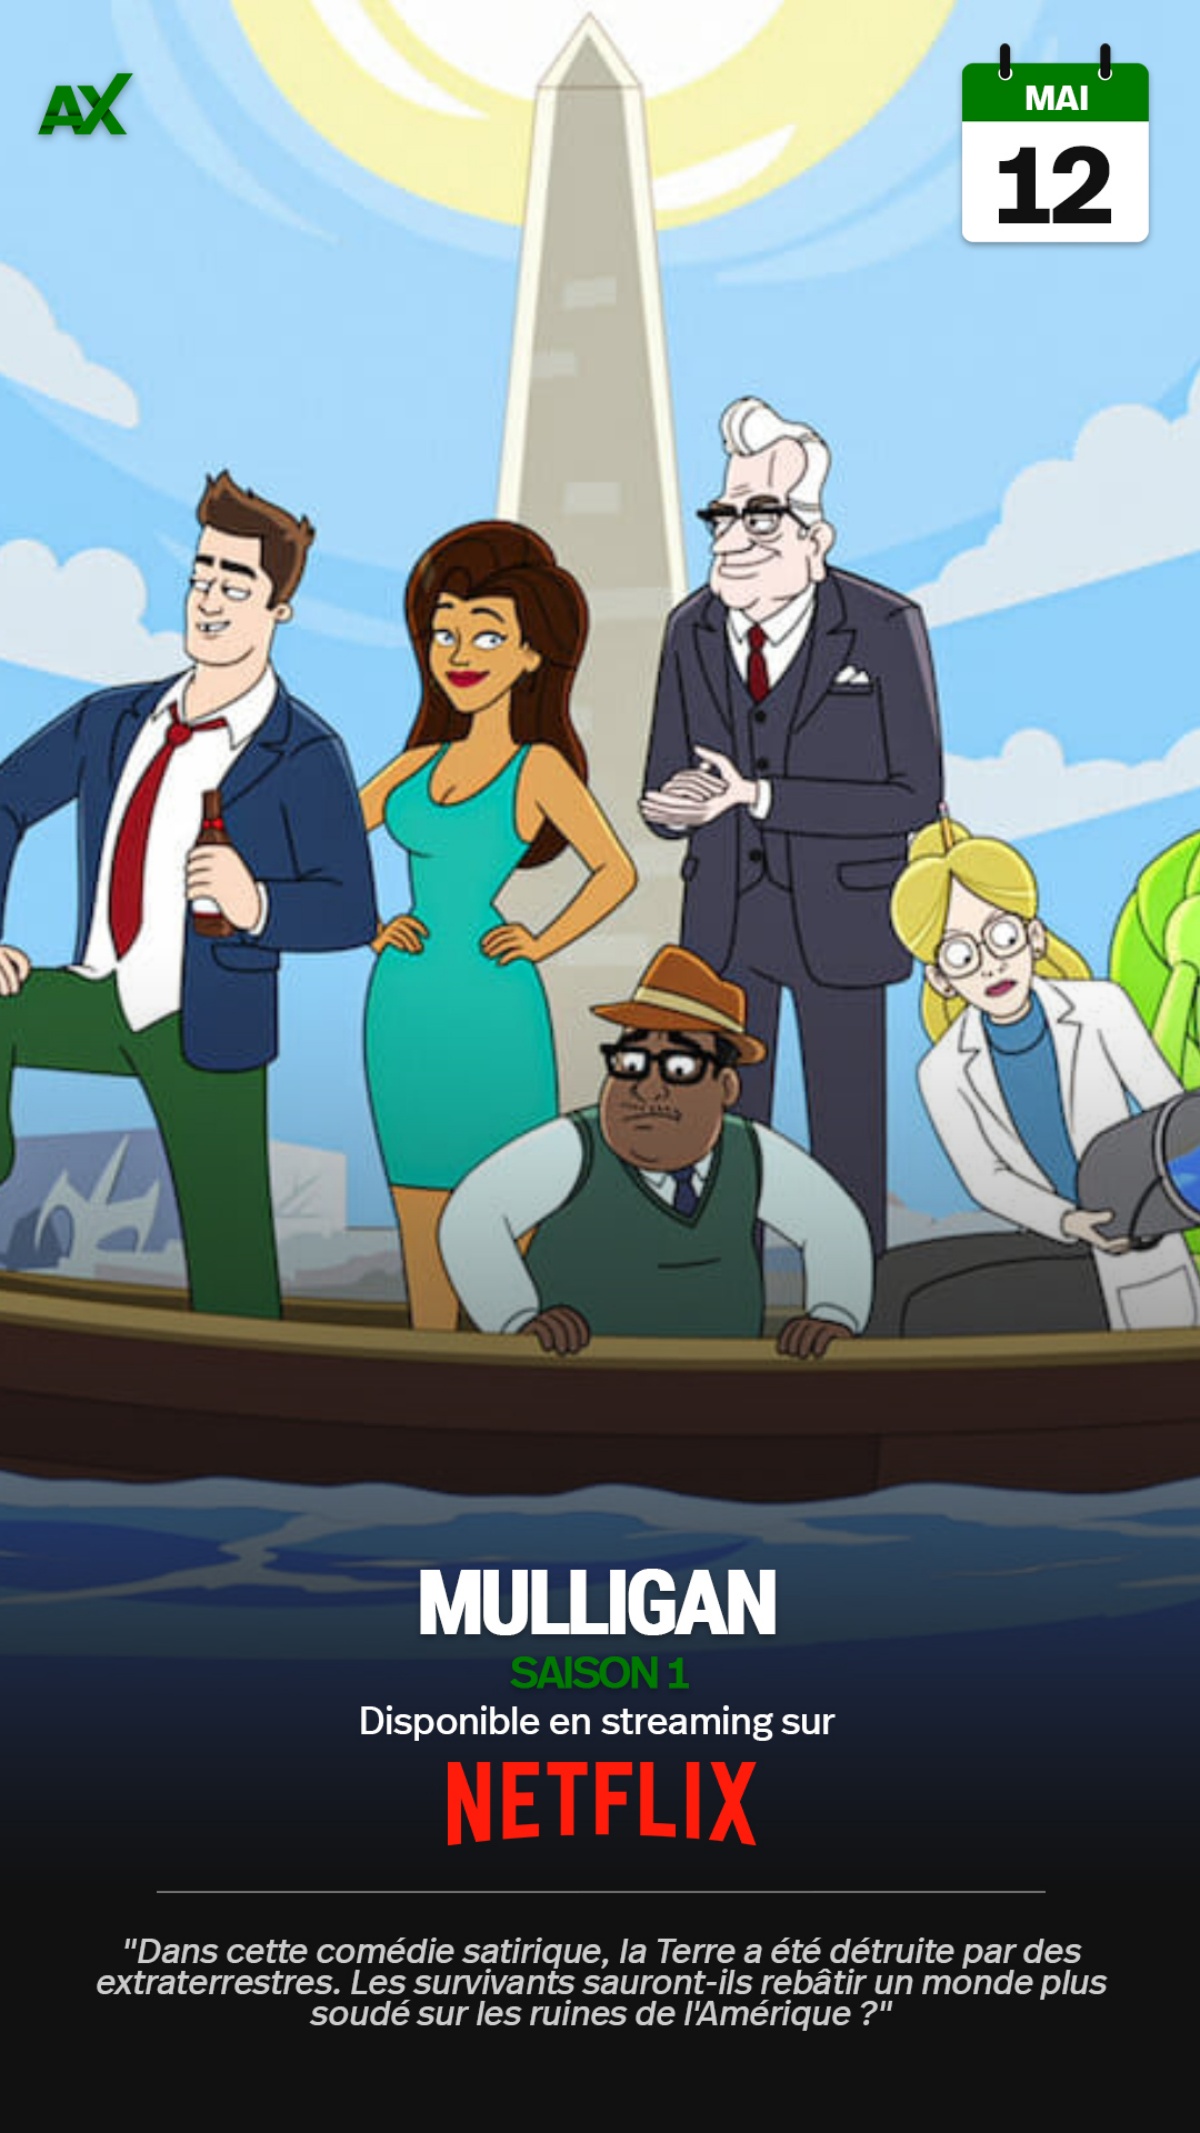 Mulligan : cette première saison animée amuse et fait réfléchir